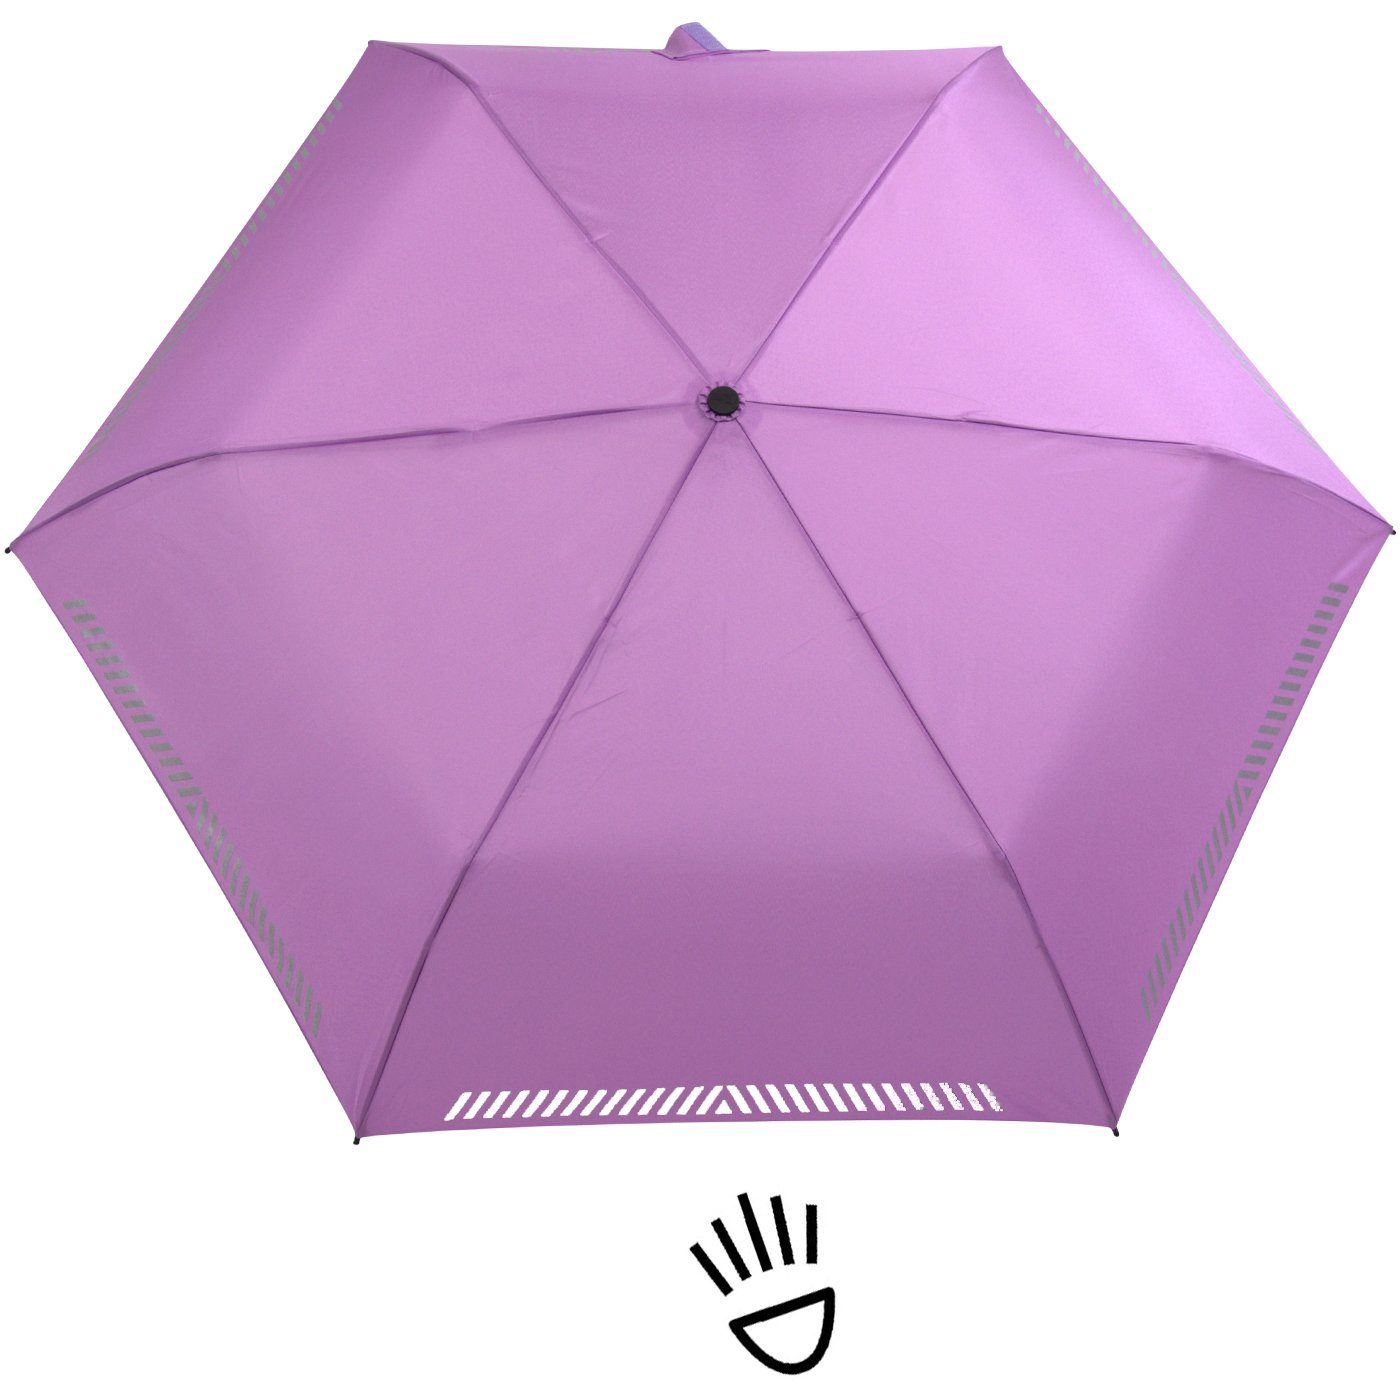 hell-lila Reflex-Streifen Kinderschirm - Sicherheit iX-brella mit reflektierend, Auf-Zu-Automatik, Taschenregenschirm durch